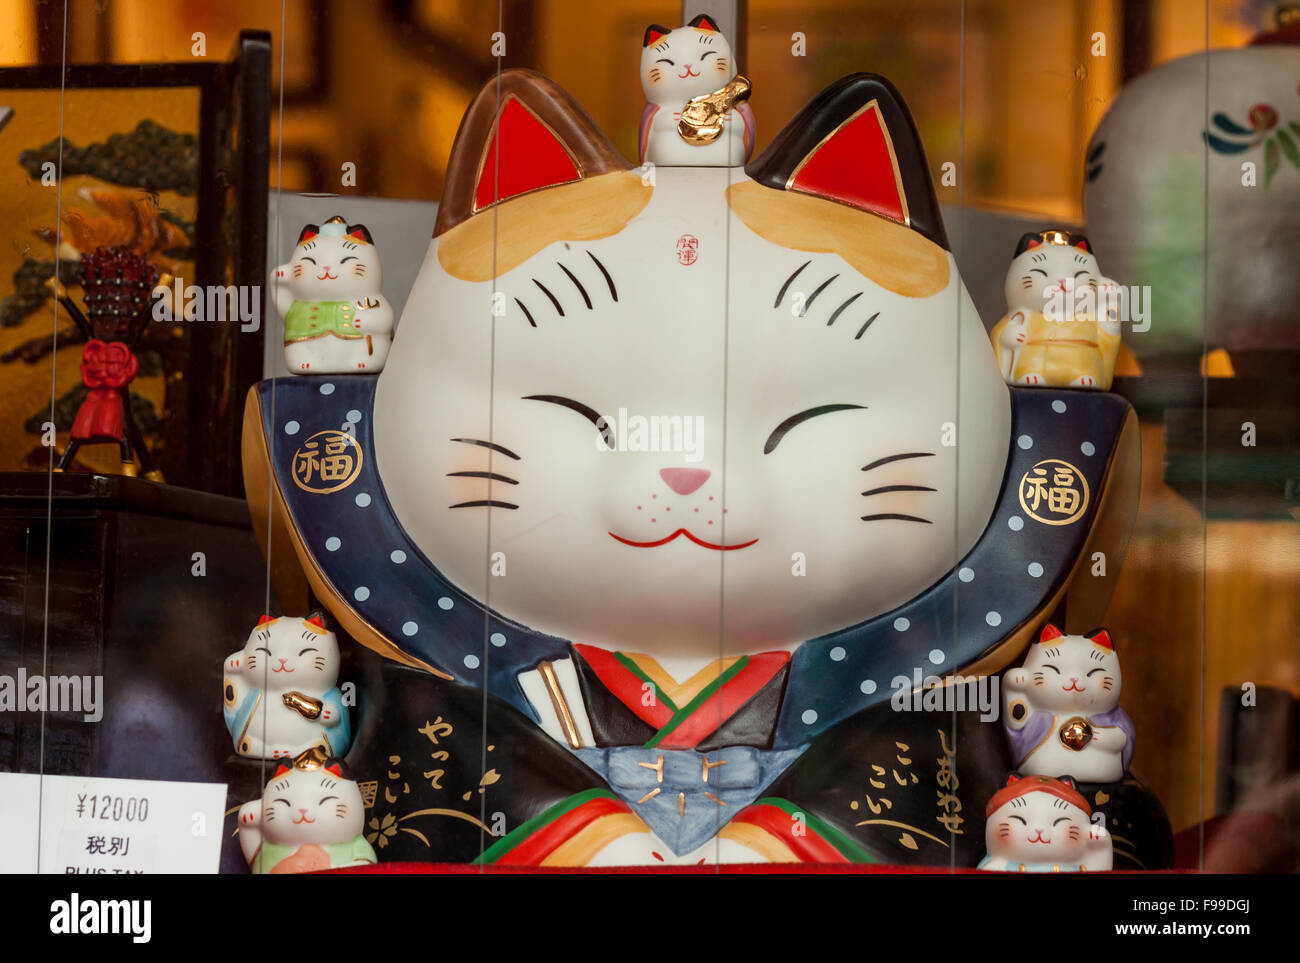 TOKYO, JAPON - 27 juin 2015 : Maneki-neko, chat porte-bonheur japonais du prince, à l'affiche dans une boutique dans le quartier d'Asakusa, Tokyo. Banque D'Images